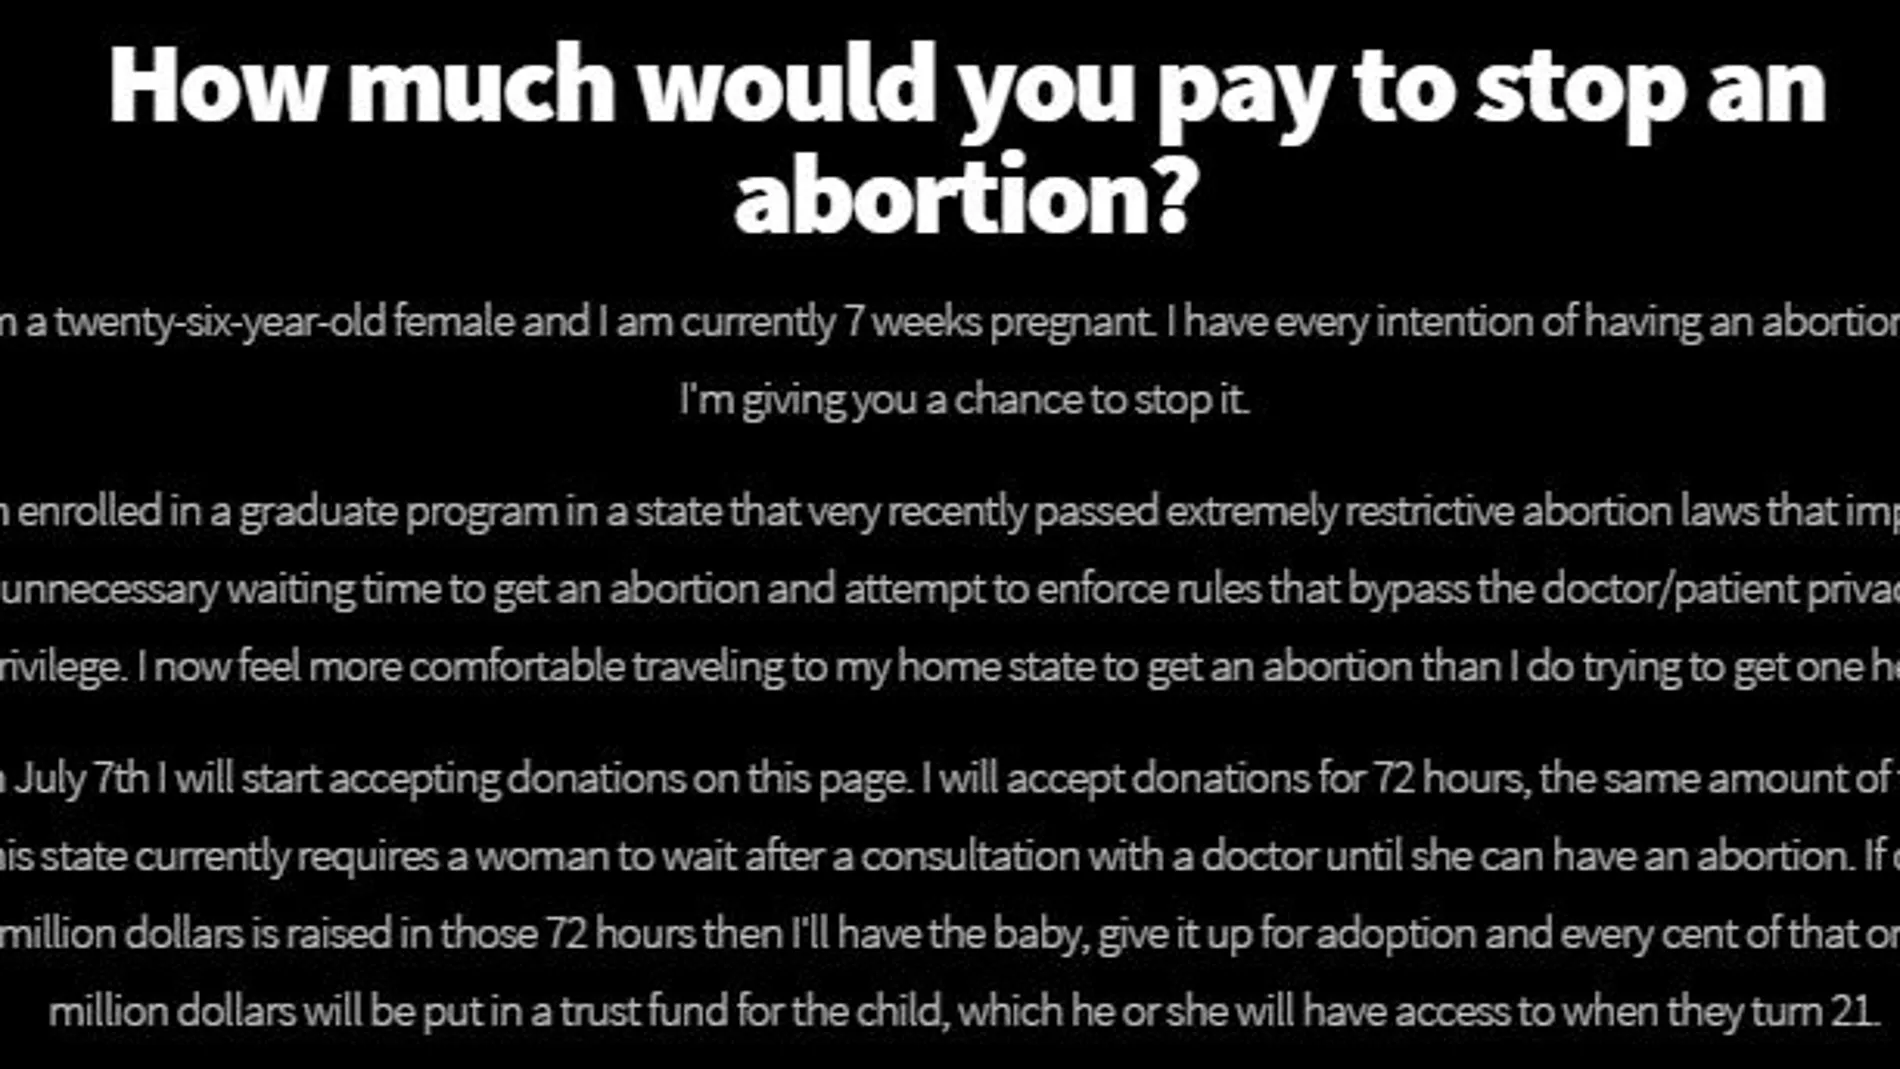 Imagen de la página web que publicó la carta que amenazaba con un falso aborto